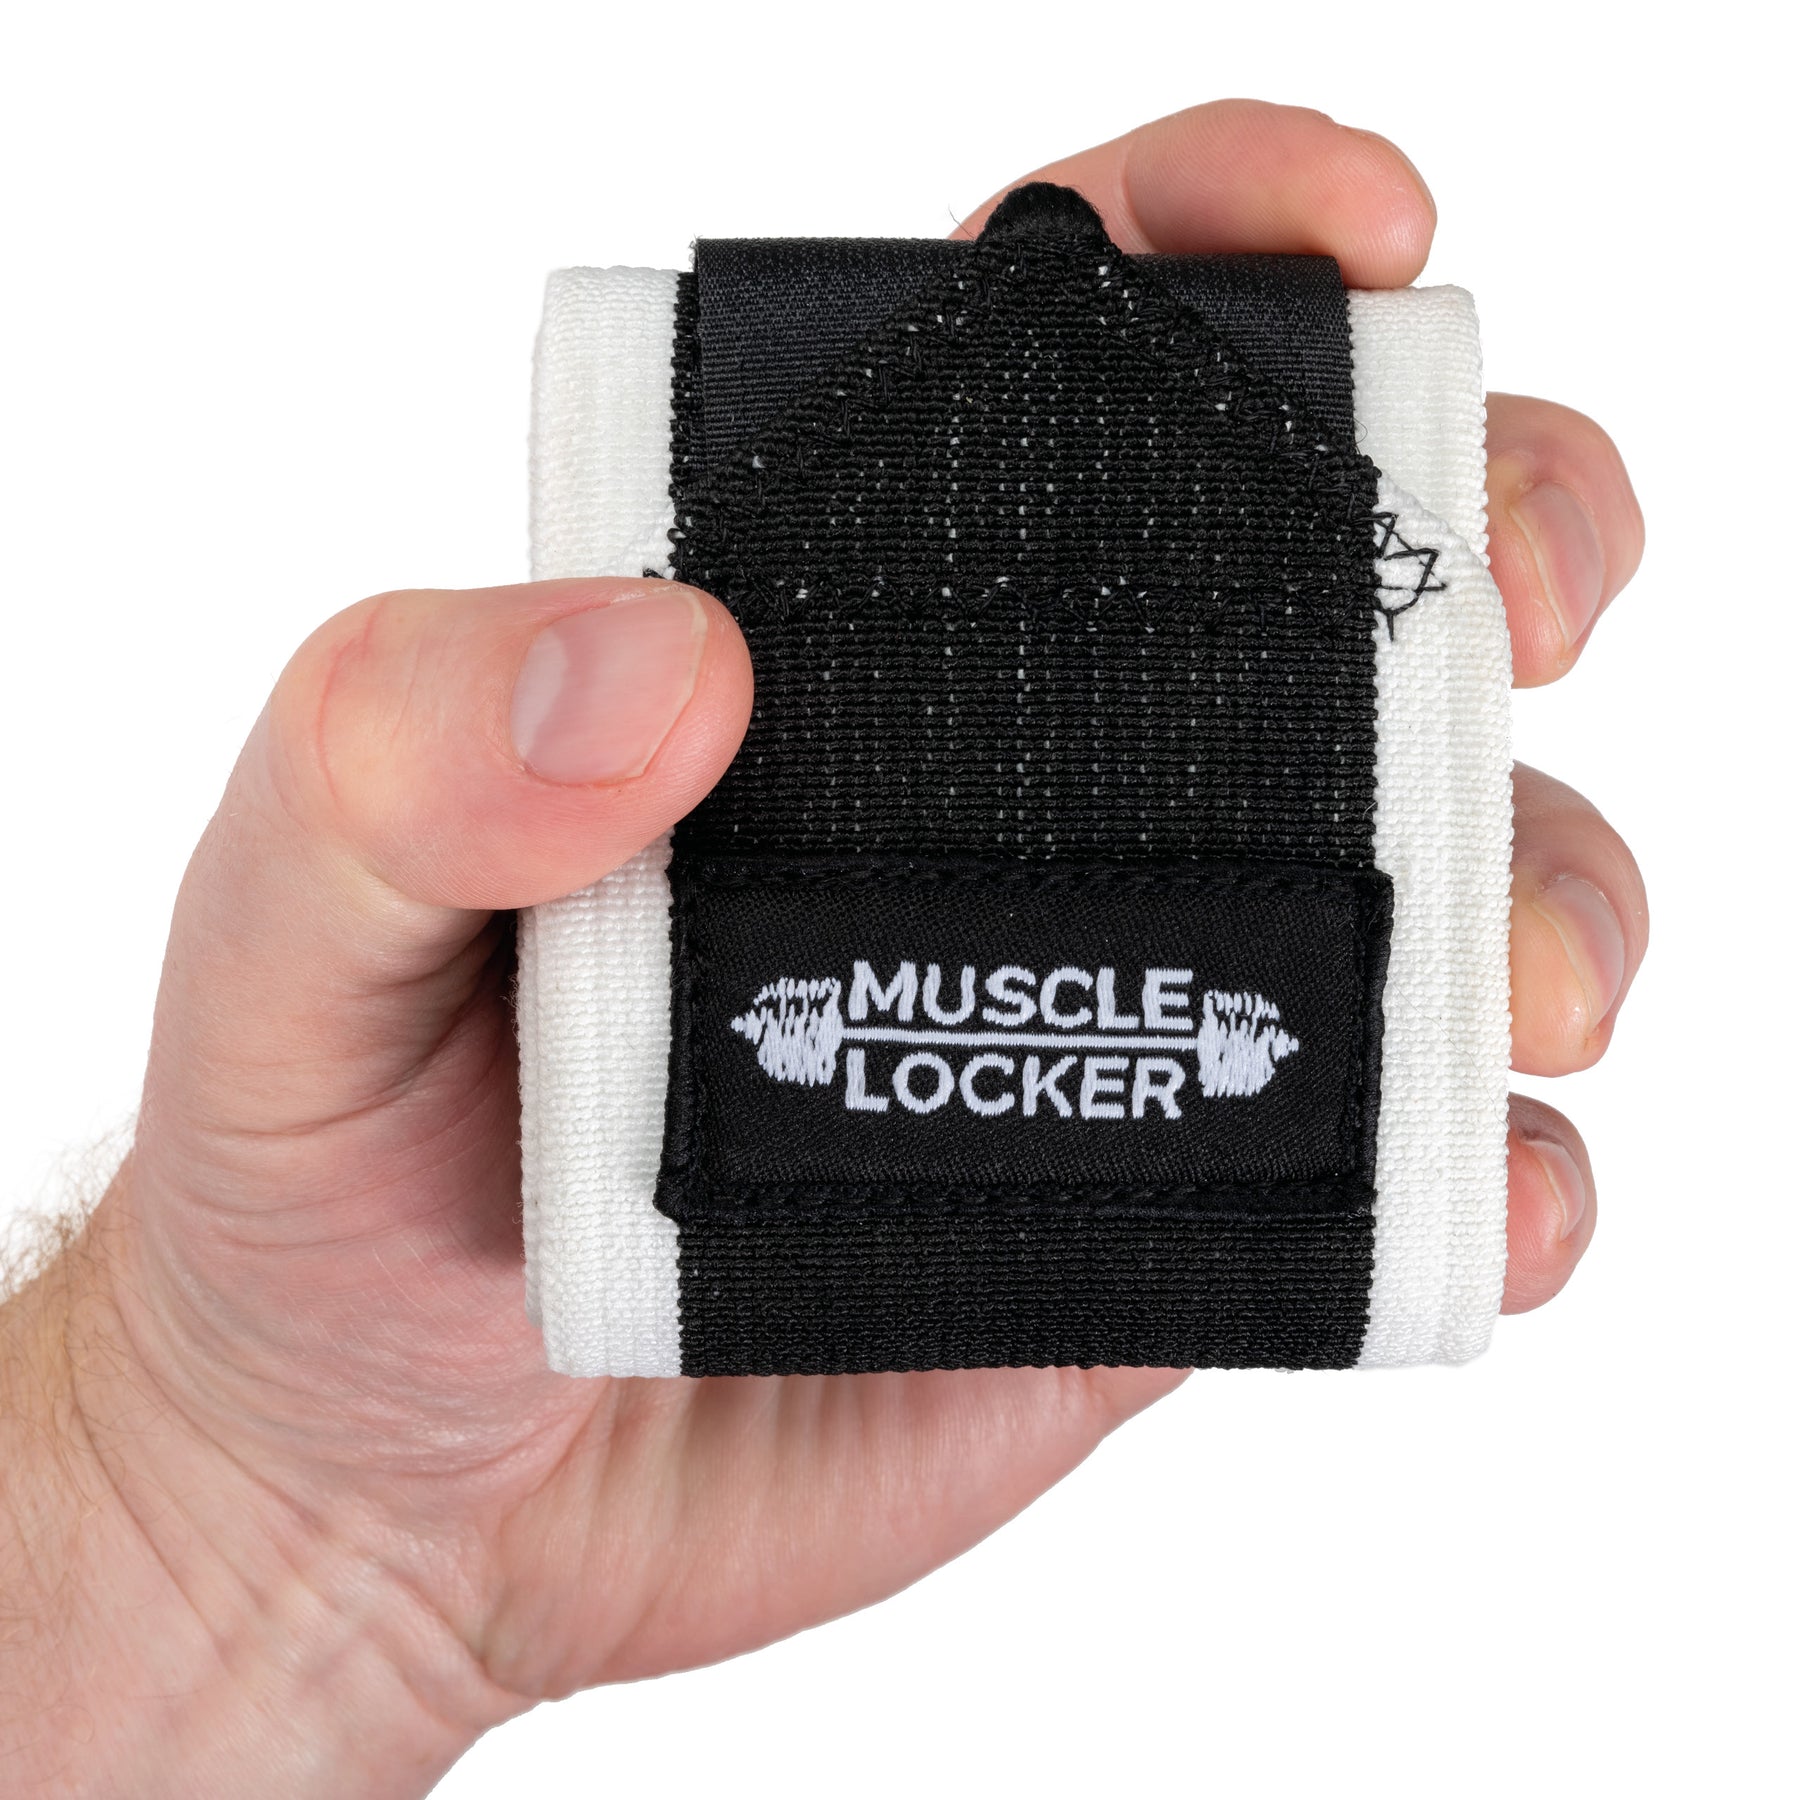 The Muscle Locker Flexible Wrist Wraps